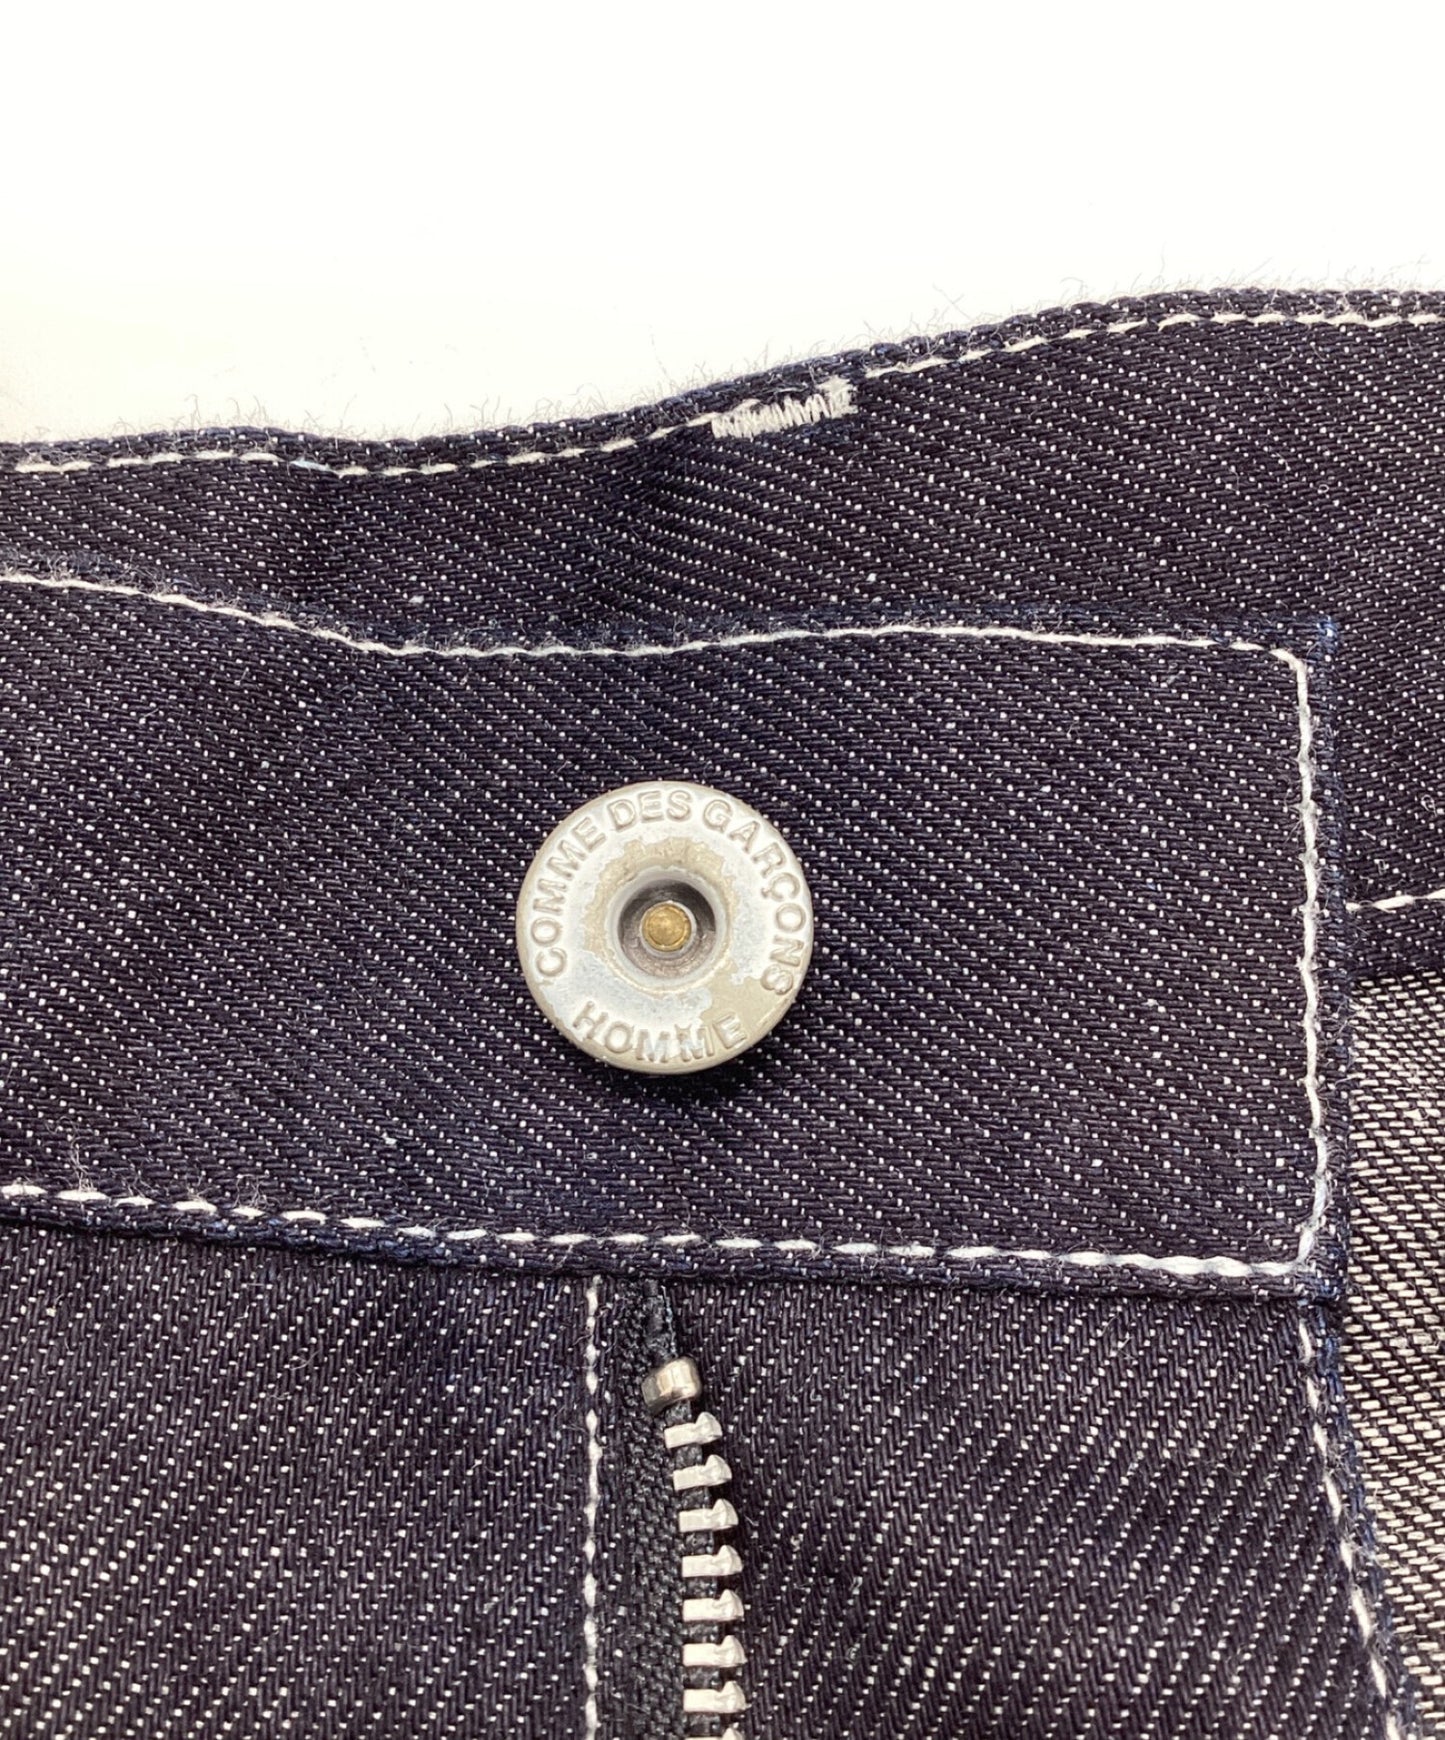 [Pre-owned] COMME des GARCONS HOMME Cotton Linen Denim 2-Tuck Shorts HI-P023